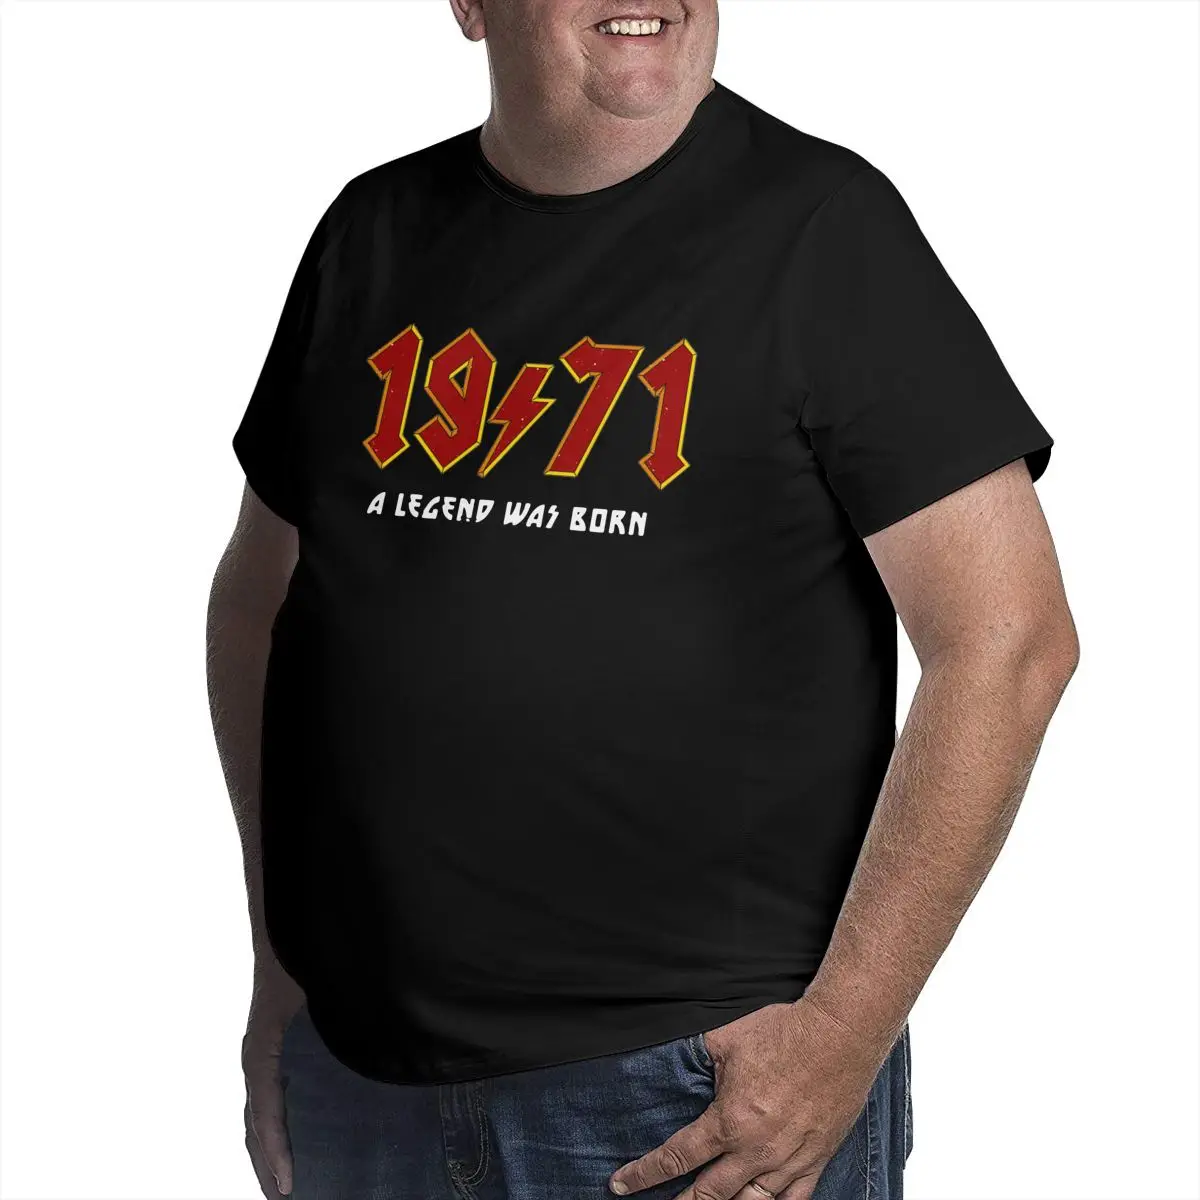 Мужская футболка в стиле ретро белая большого размера 50-х годов для взрослых